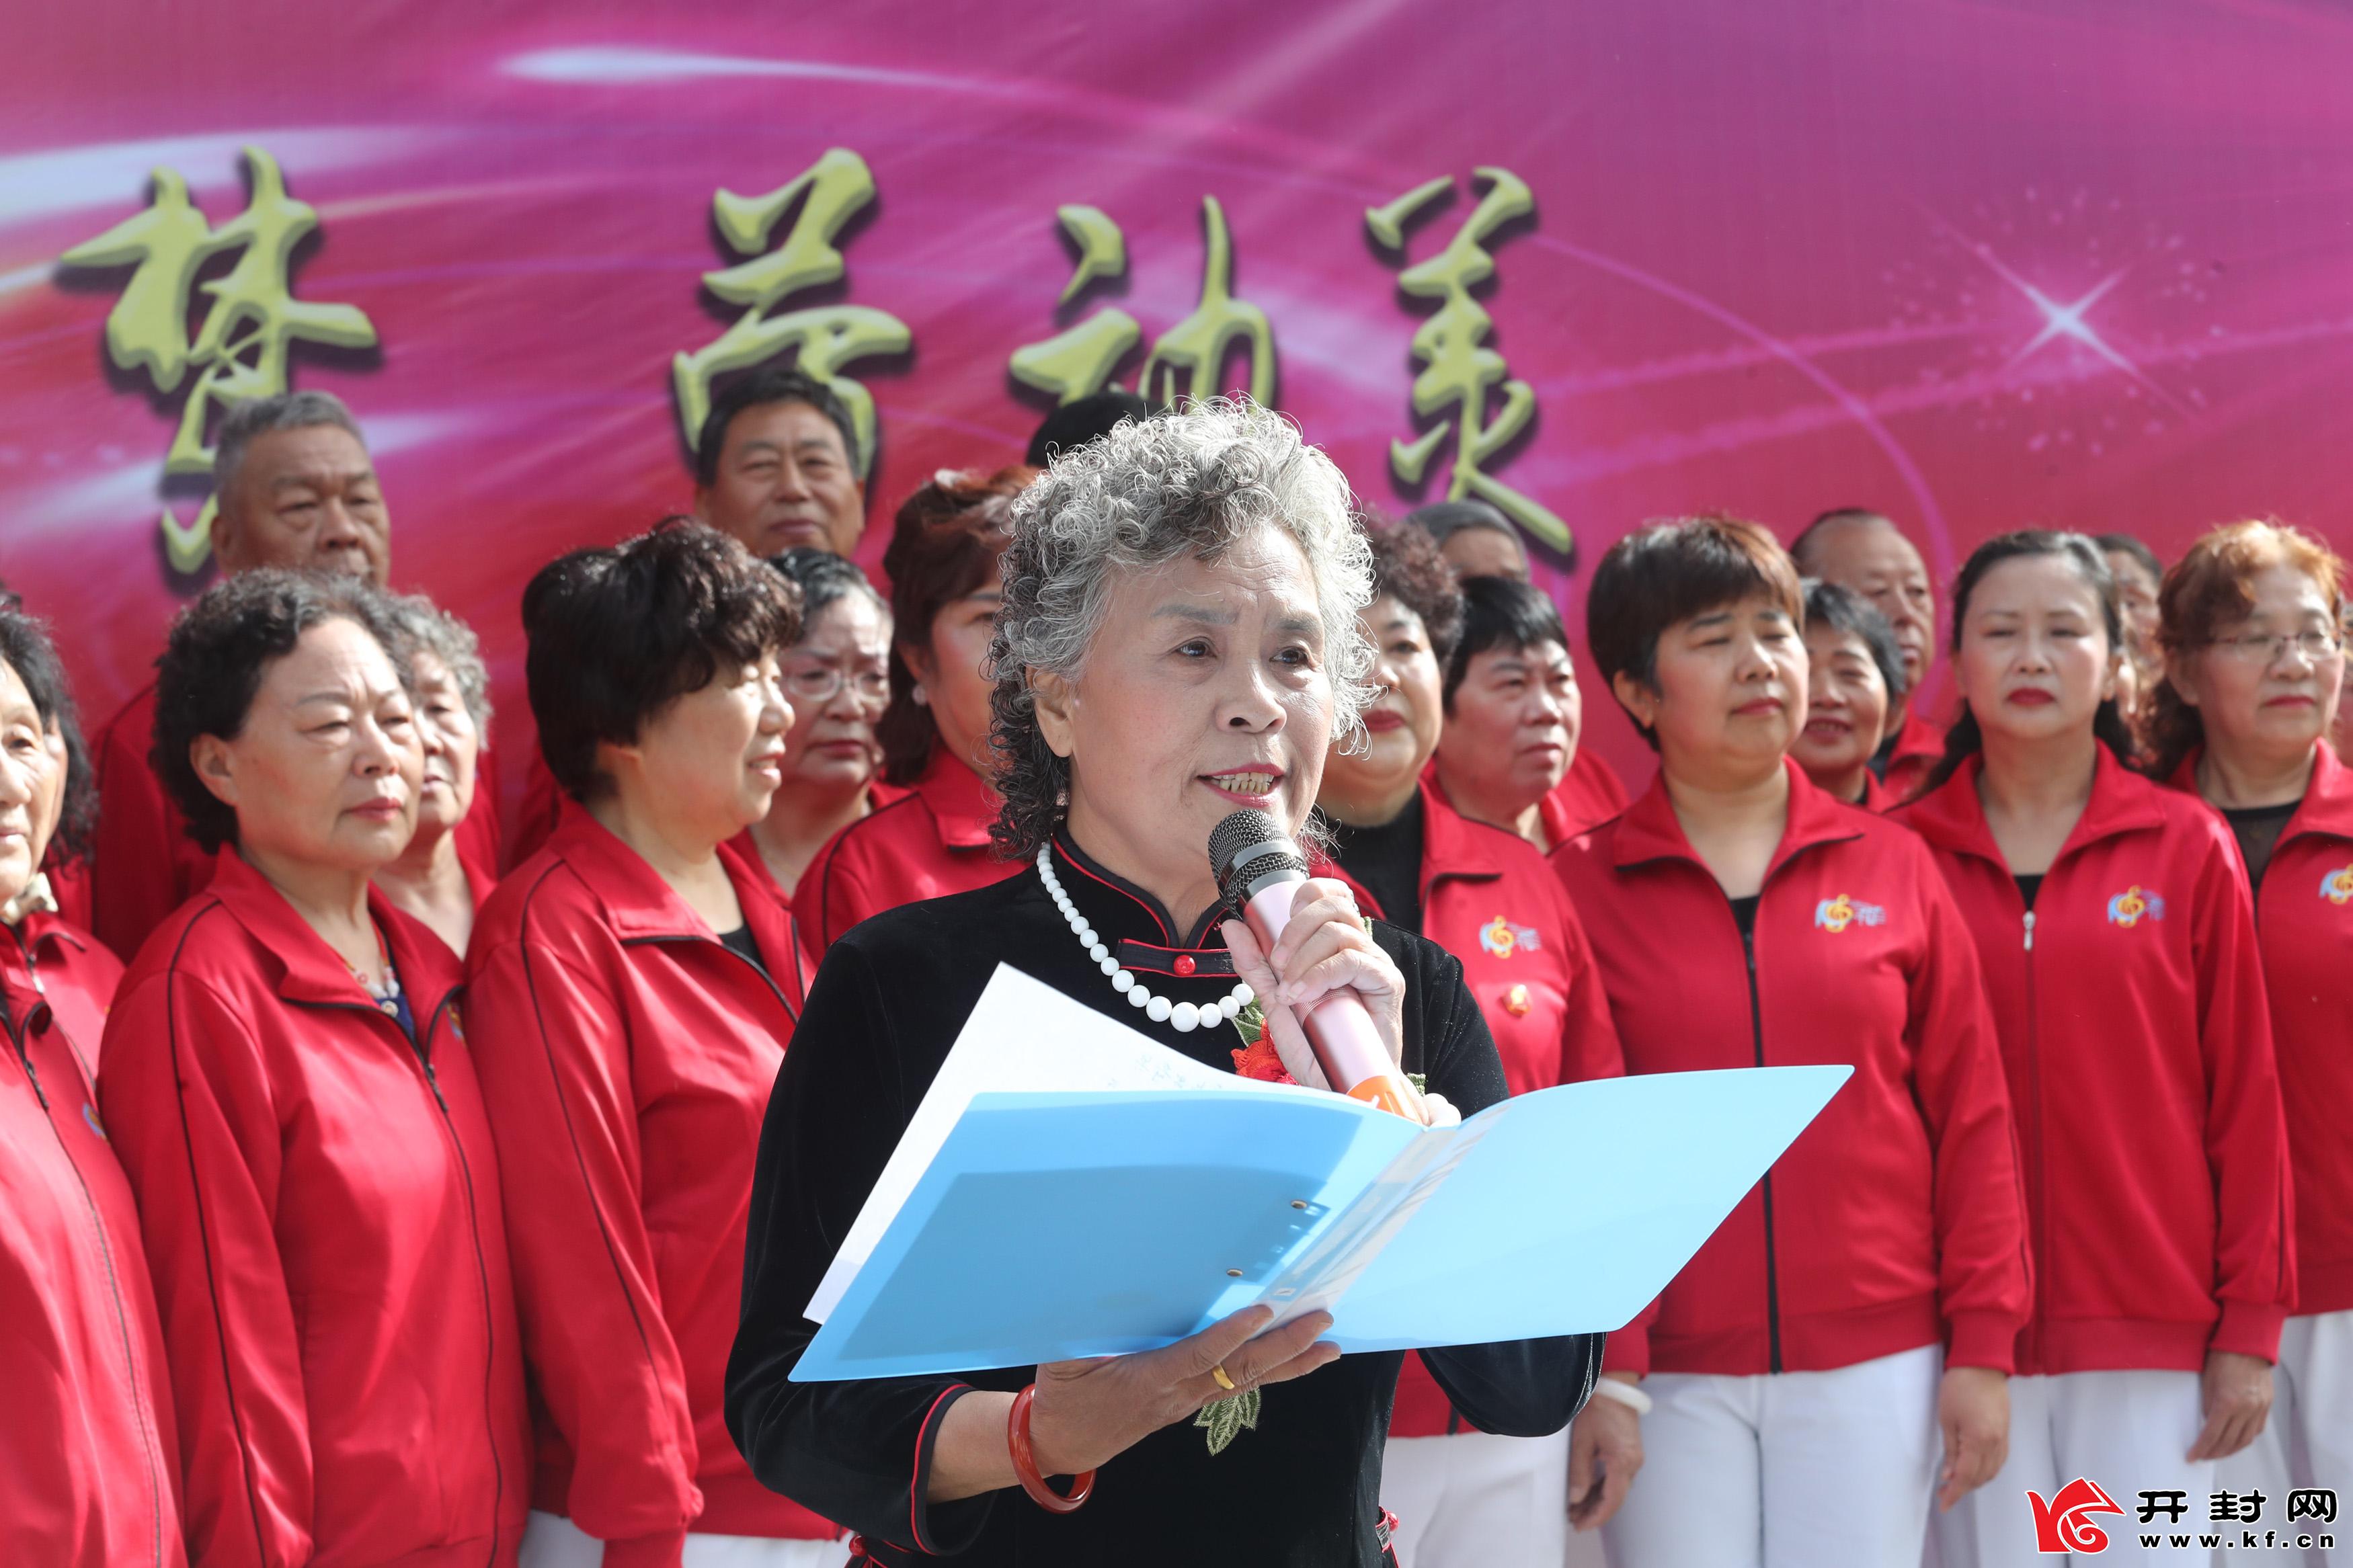  “五一”国际劳动节到来之际，宋城路社区举办中国梦 劳动美为主题的庆“五一”文艺演出，丰富社区群众文化生活，营造欢乐祥和的节日气氛，向建党100周年献礼。全 媒体记者 李俊生4月29日摄